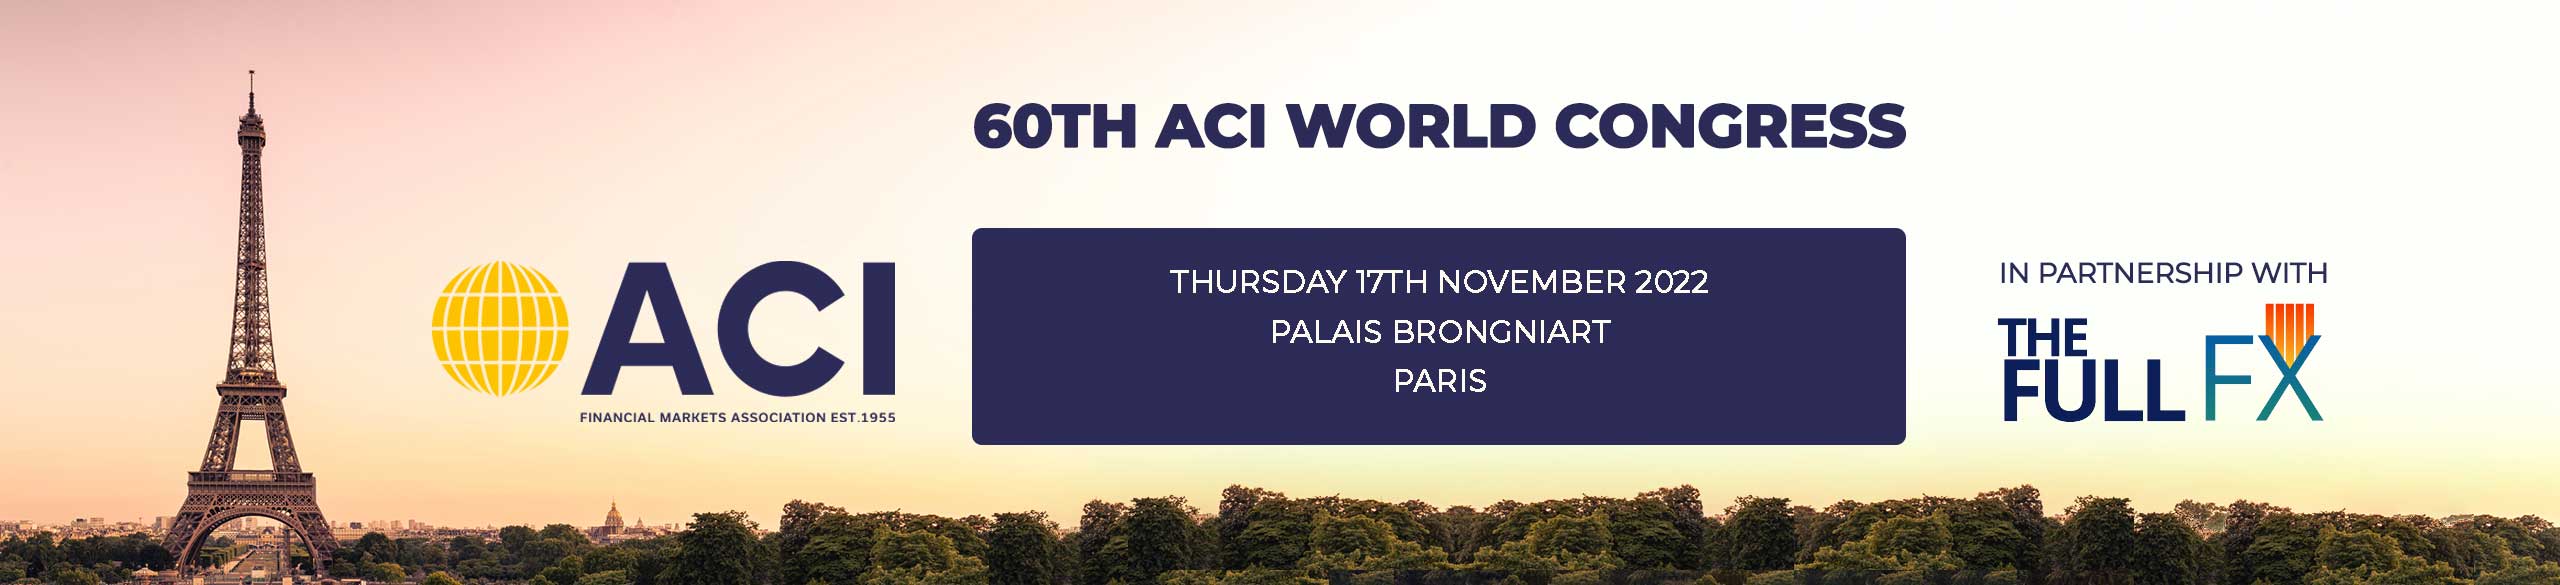 60º Congresso Mundial da ACI Financial Markets Association - 17 Novembro 2022 em Paris